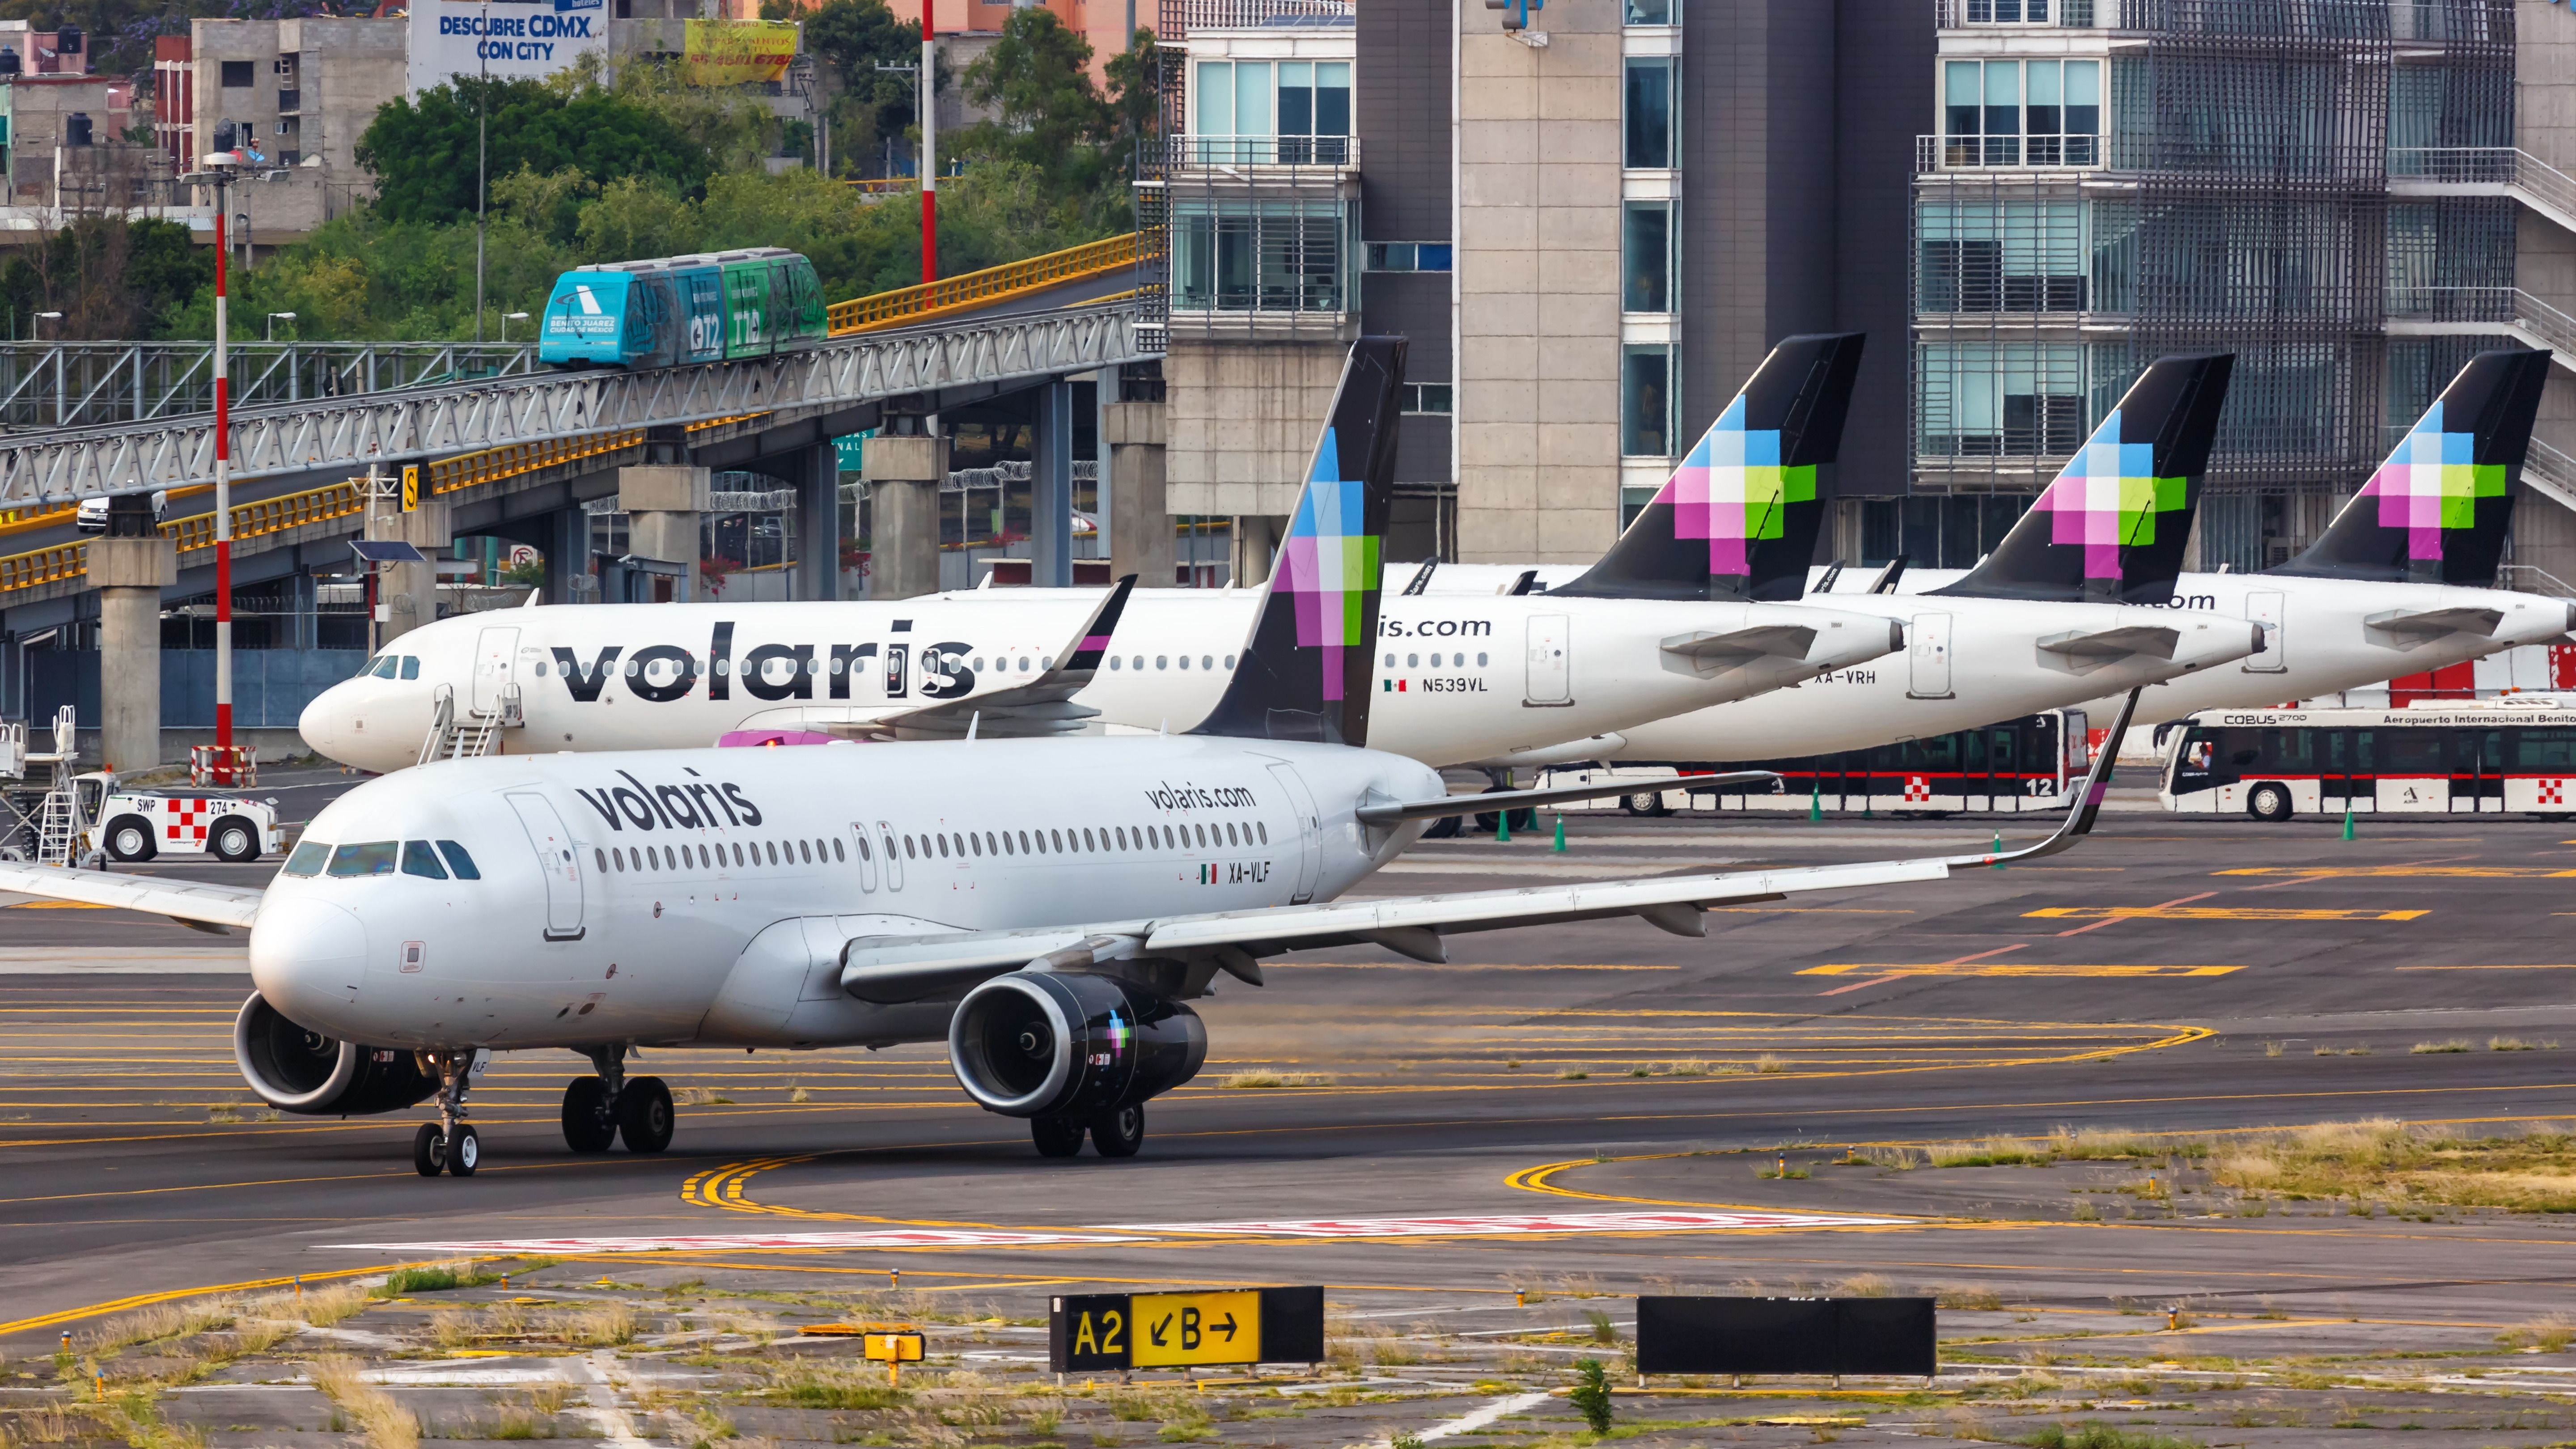 Several Volaris aircraft at MEX 